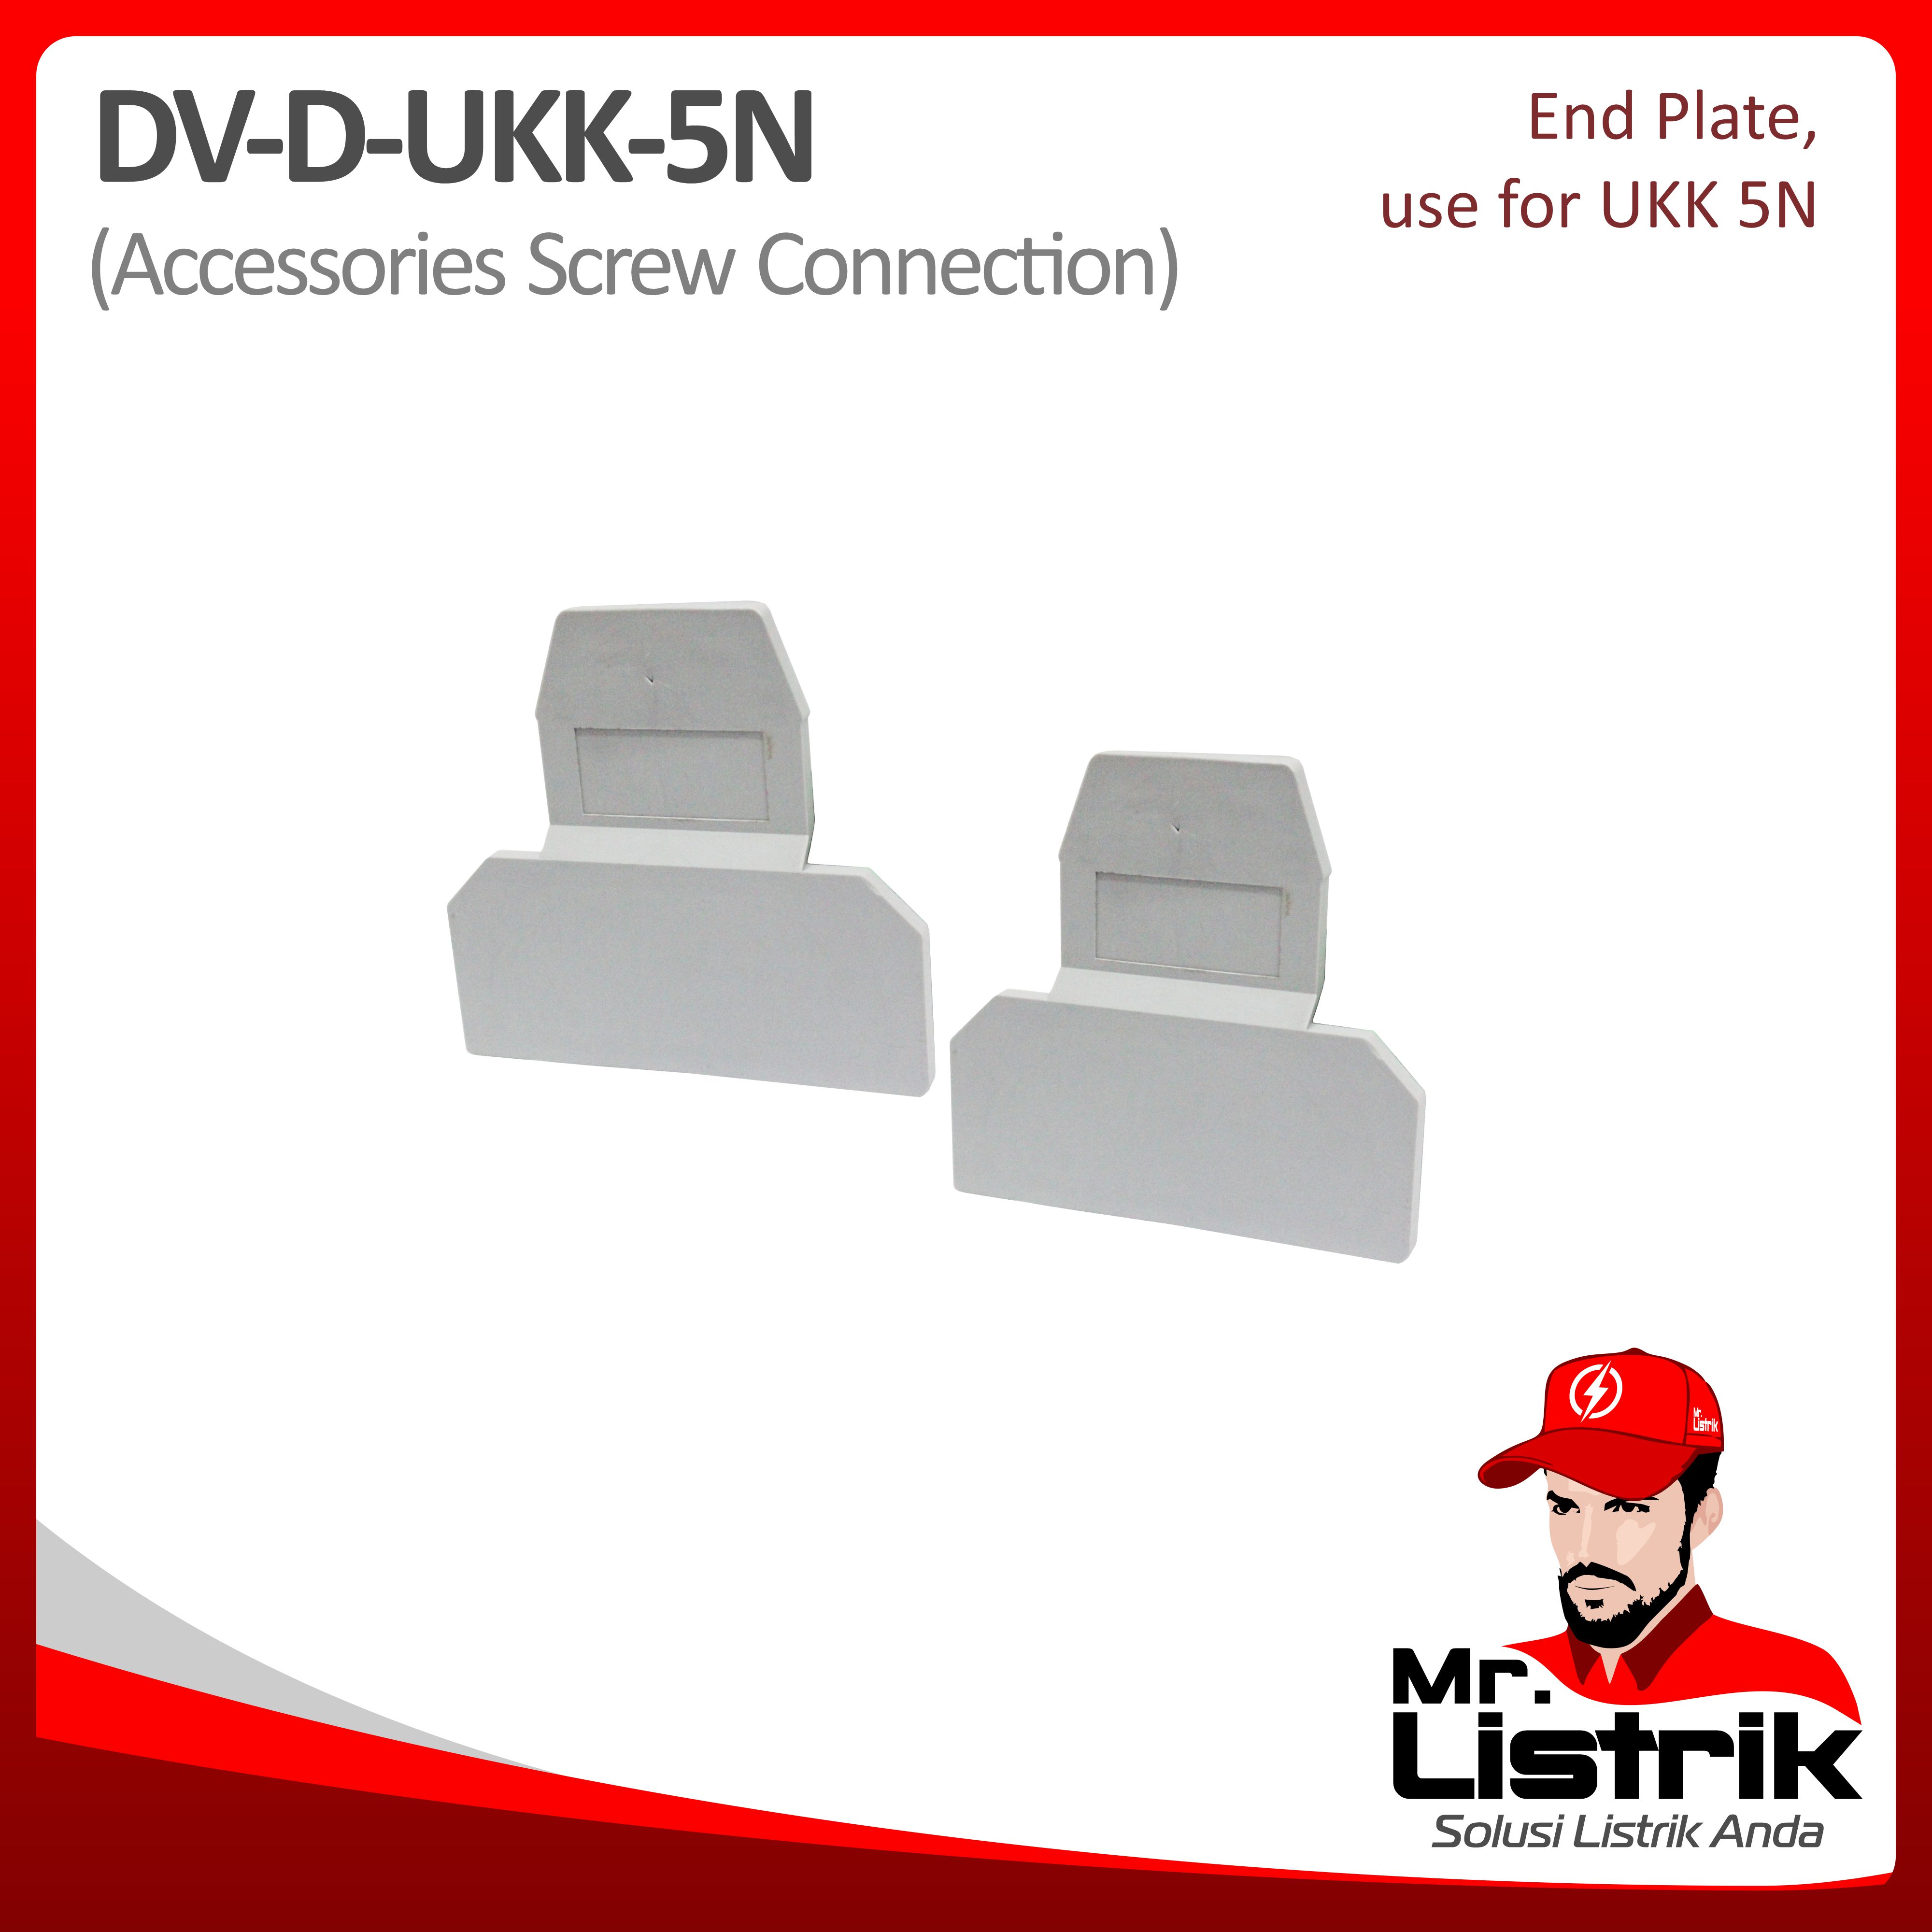 End Plate For UKK5 DV D-UKK-5N